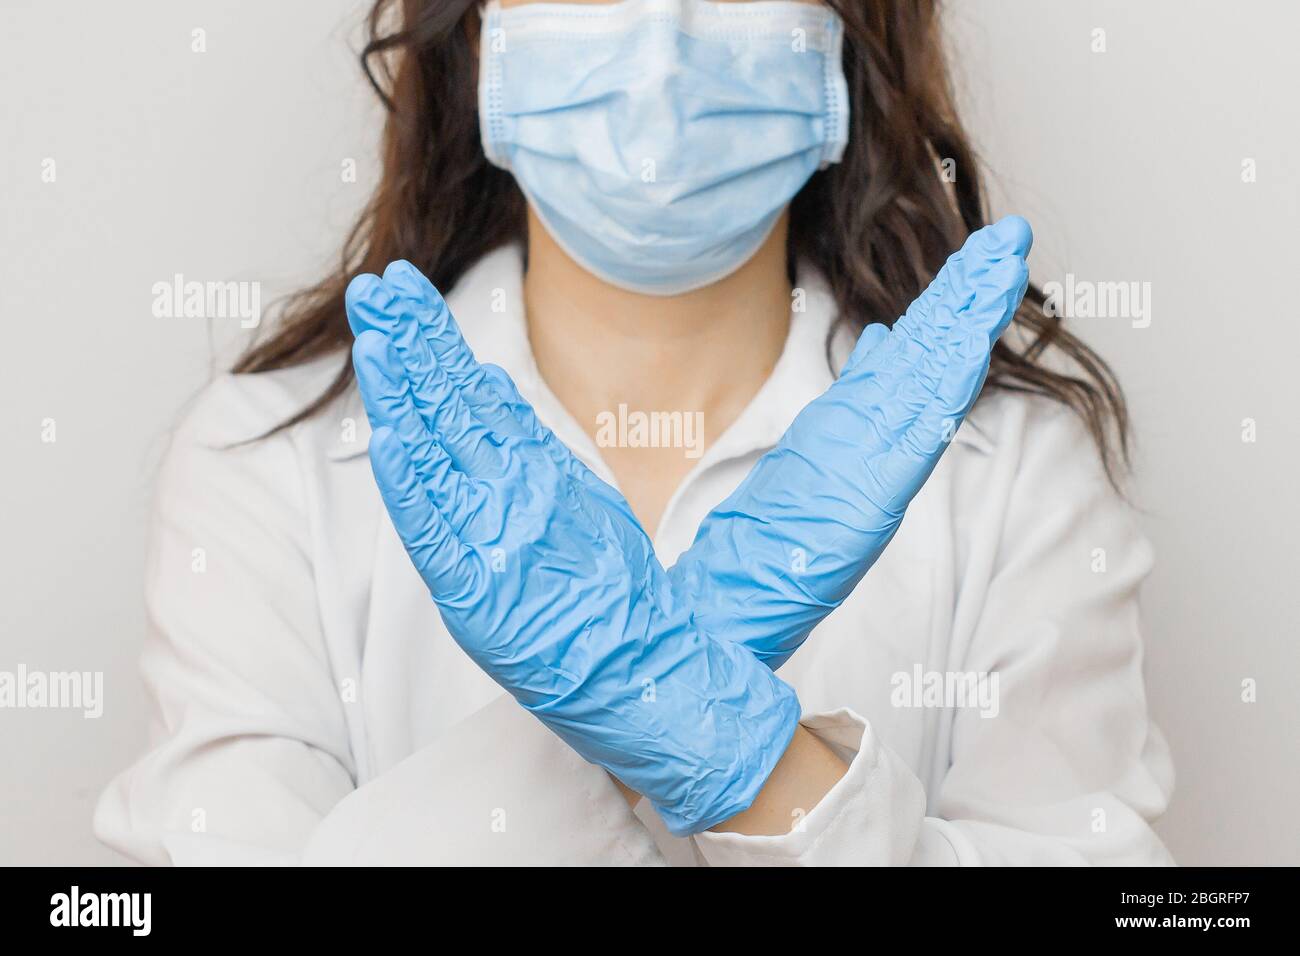 Stoppen Sie SARS-CoV, SARSCoV, Virus 2020, chinesisches Virus COVID-19. Frauen Hände in blauen medizinischen Handschuhen zeigen EIN STOPPSCHILD für Krankheit. Arzt trägt Schutz Stockfoto